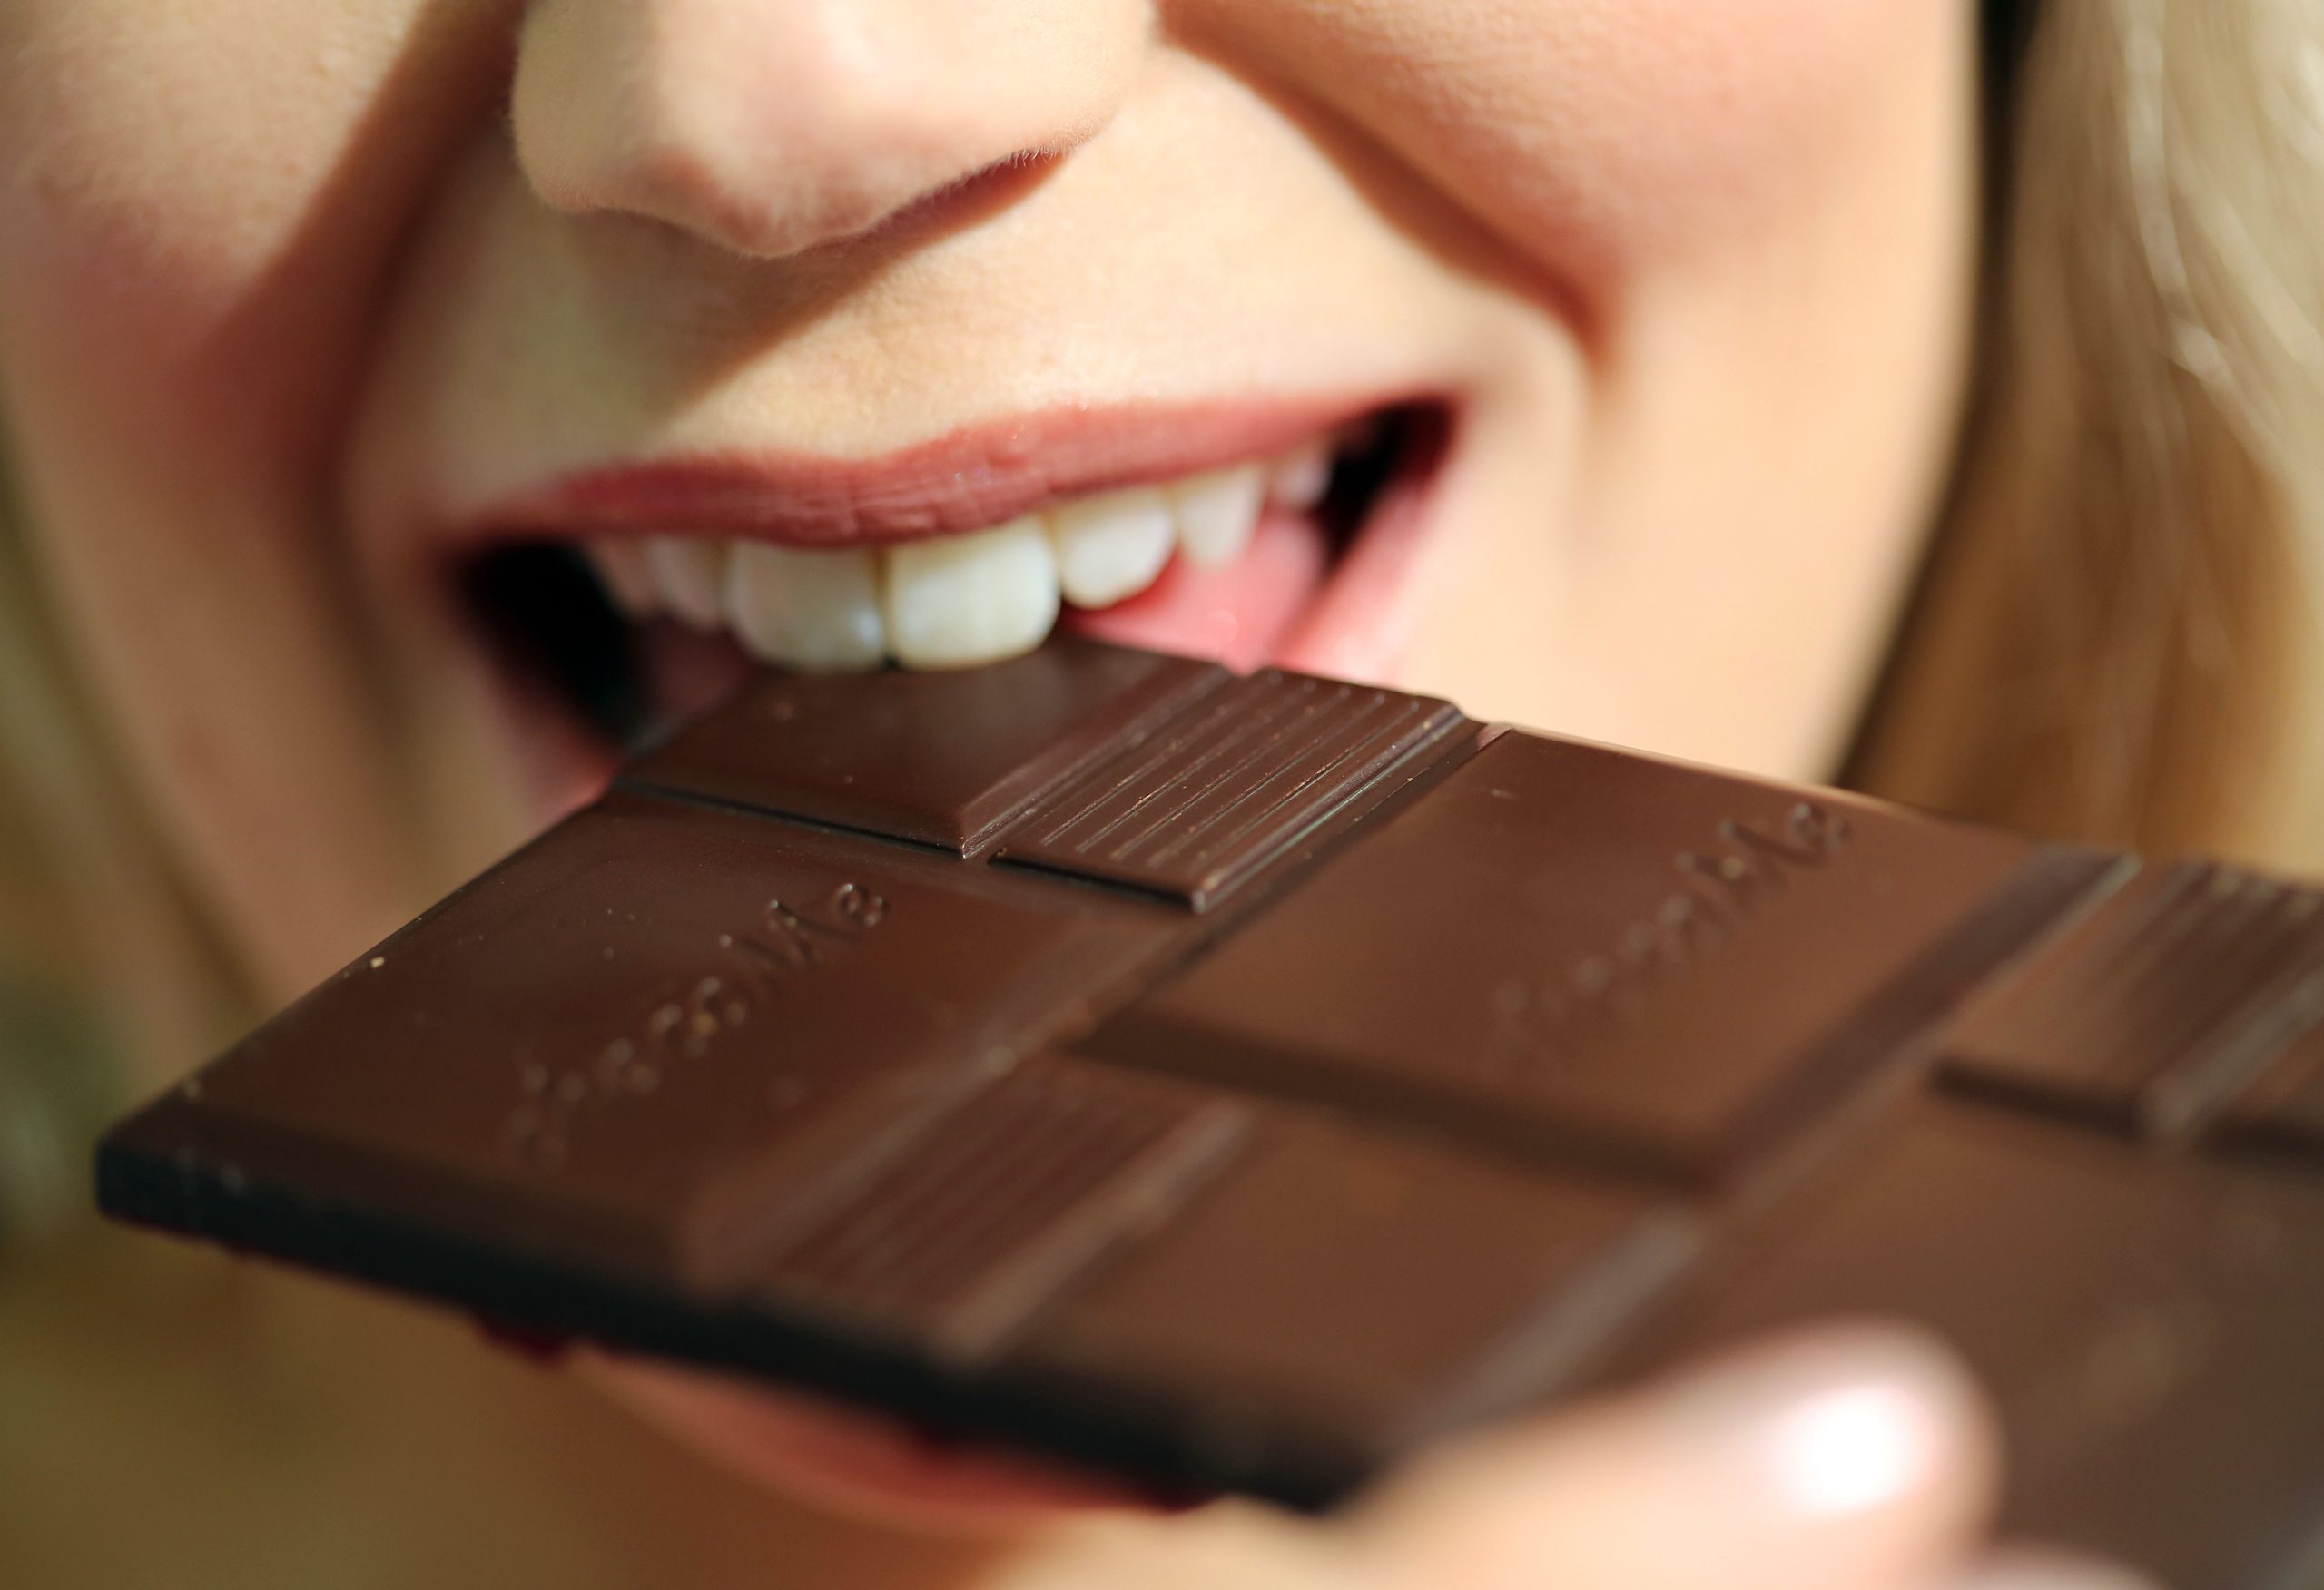 Milka, die Schokolade Welche beliebteste? oder doch ist Schokolade Merci? Kinder